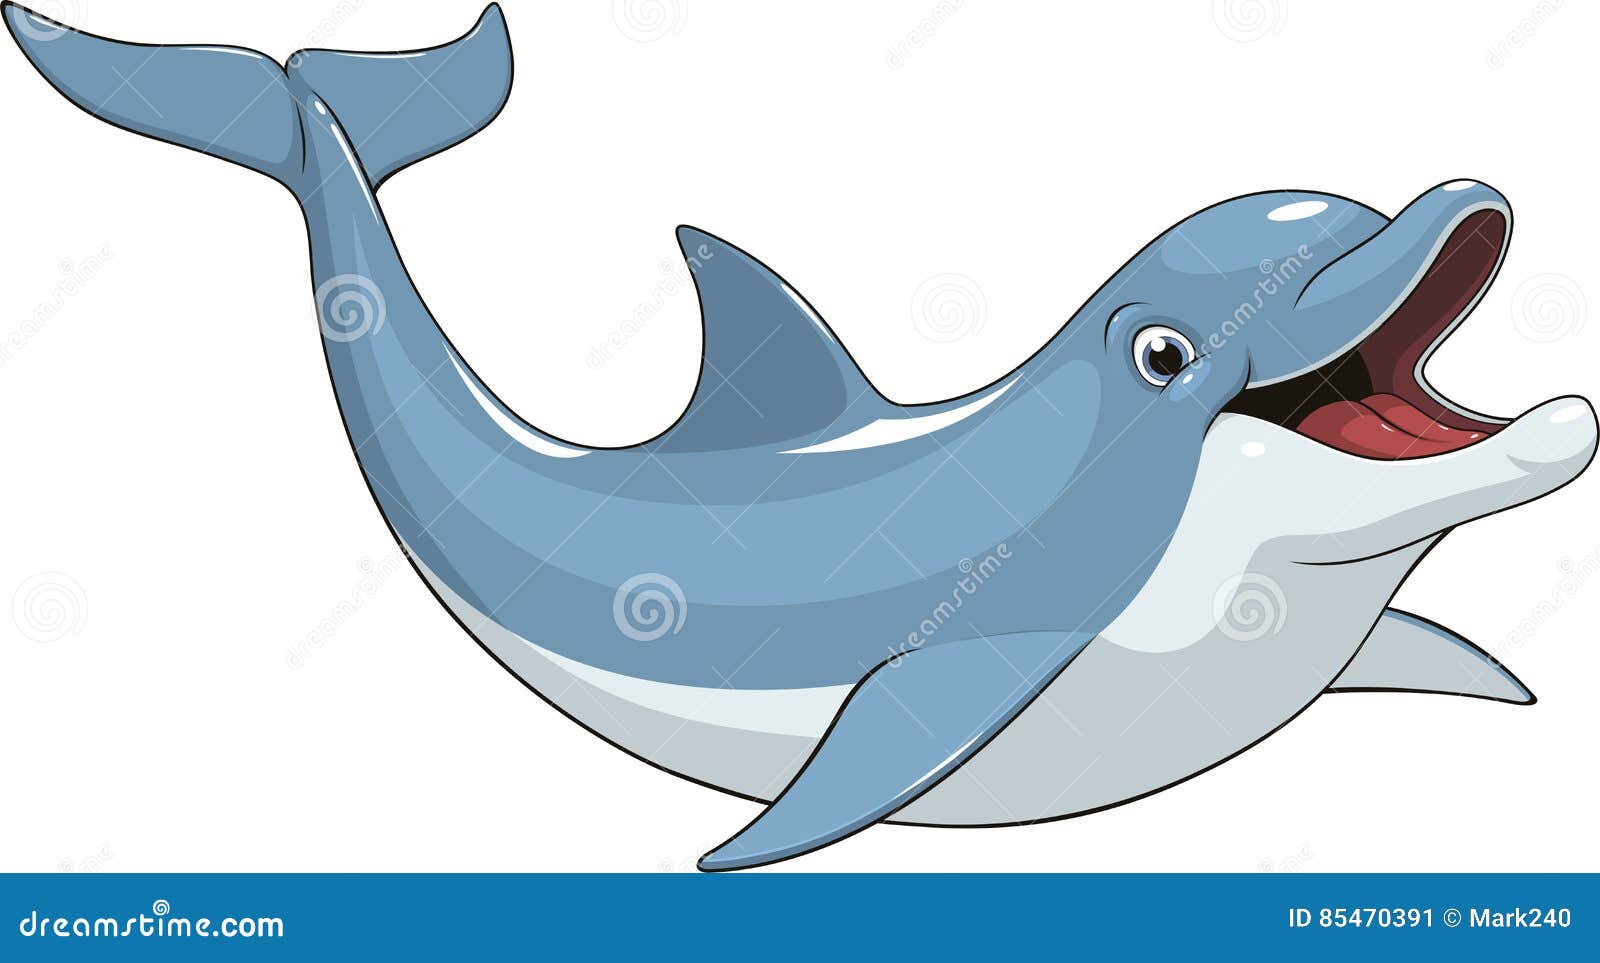 funny dolphin fun